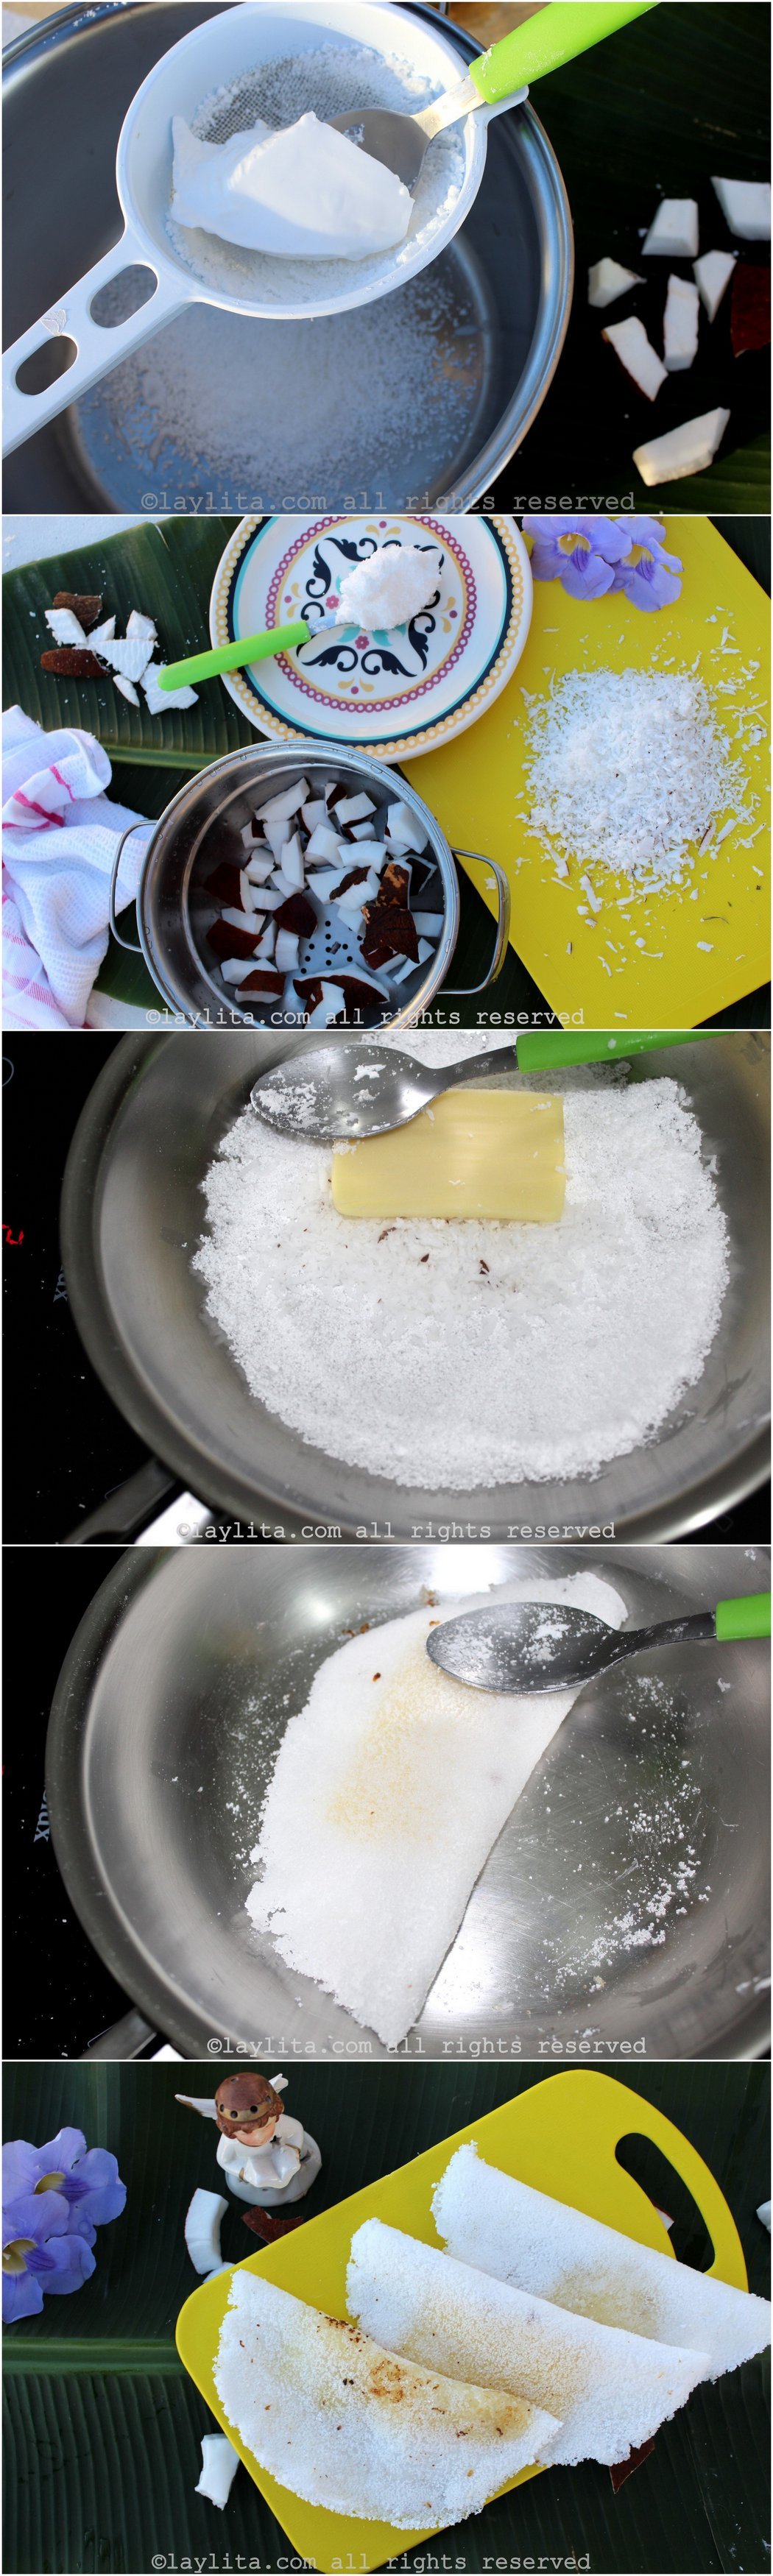 Step by step preparation for Brazlian tapioca crepes